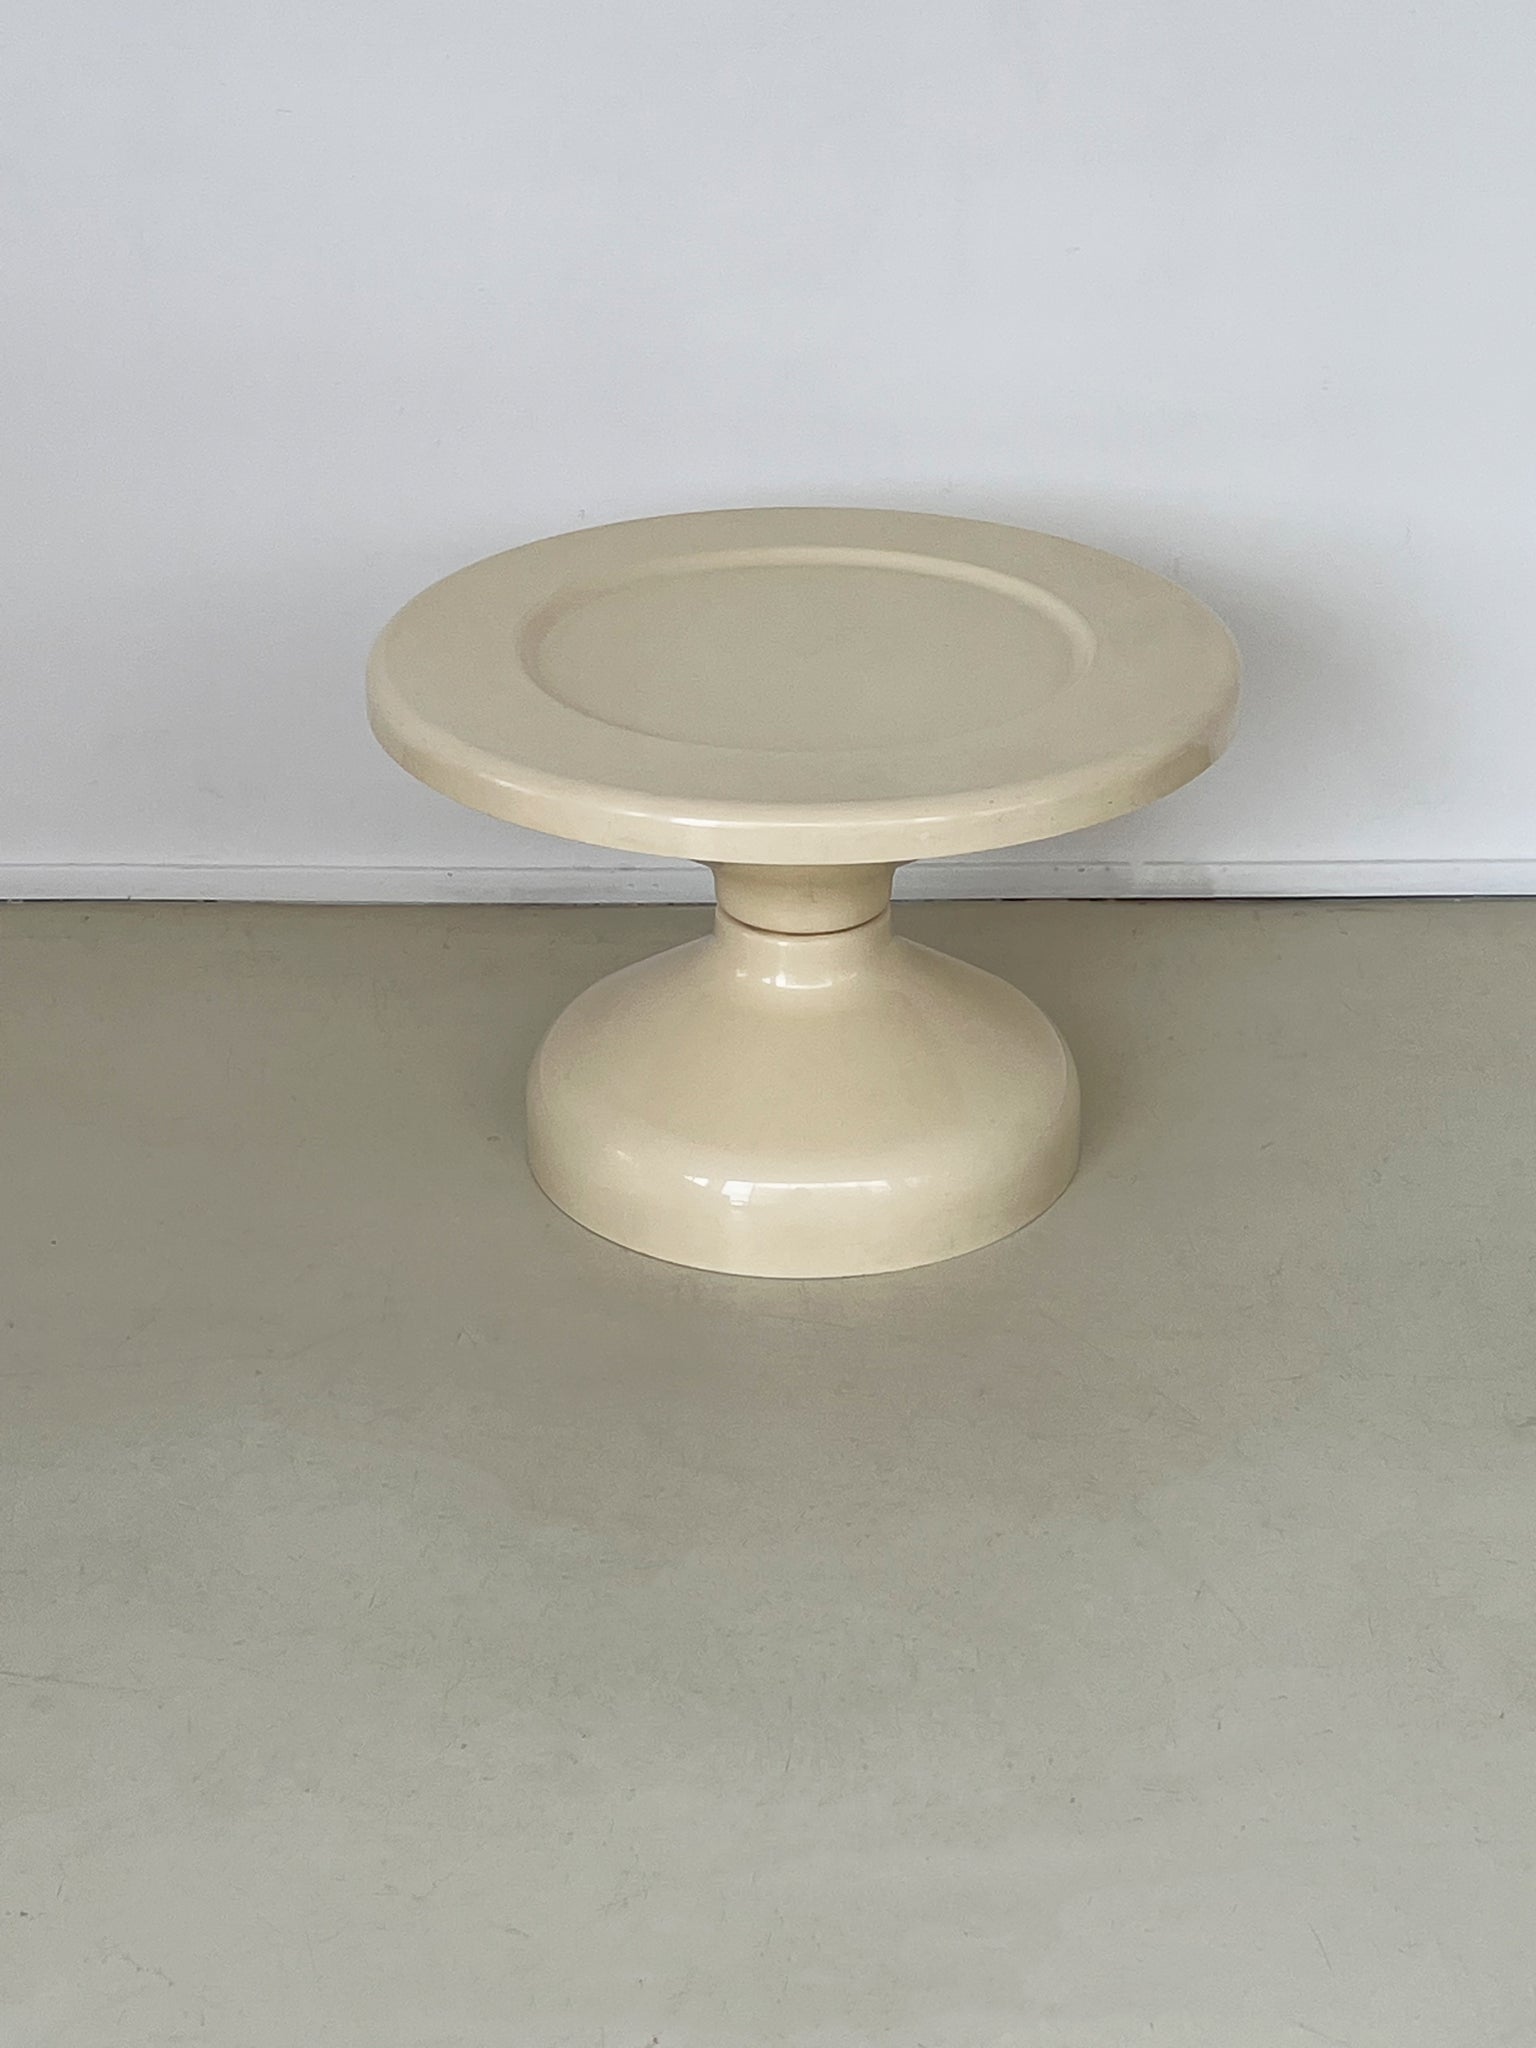 1960s Cream Rocchetto Table by A & P.G. Castiglioni for Kartell